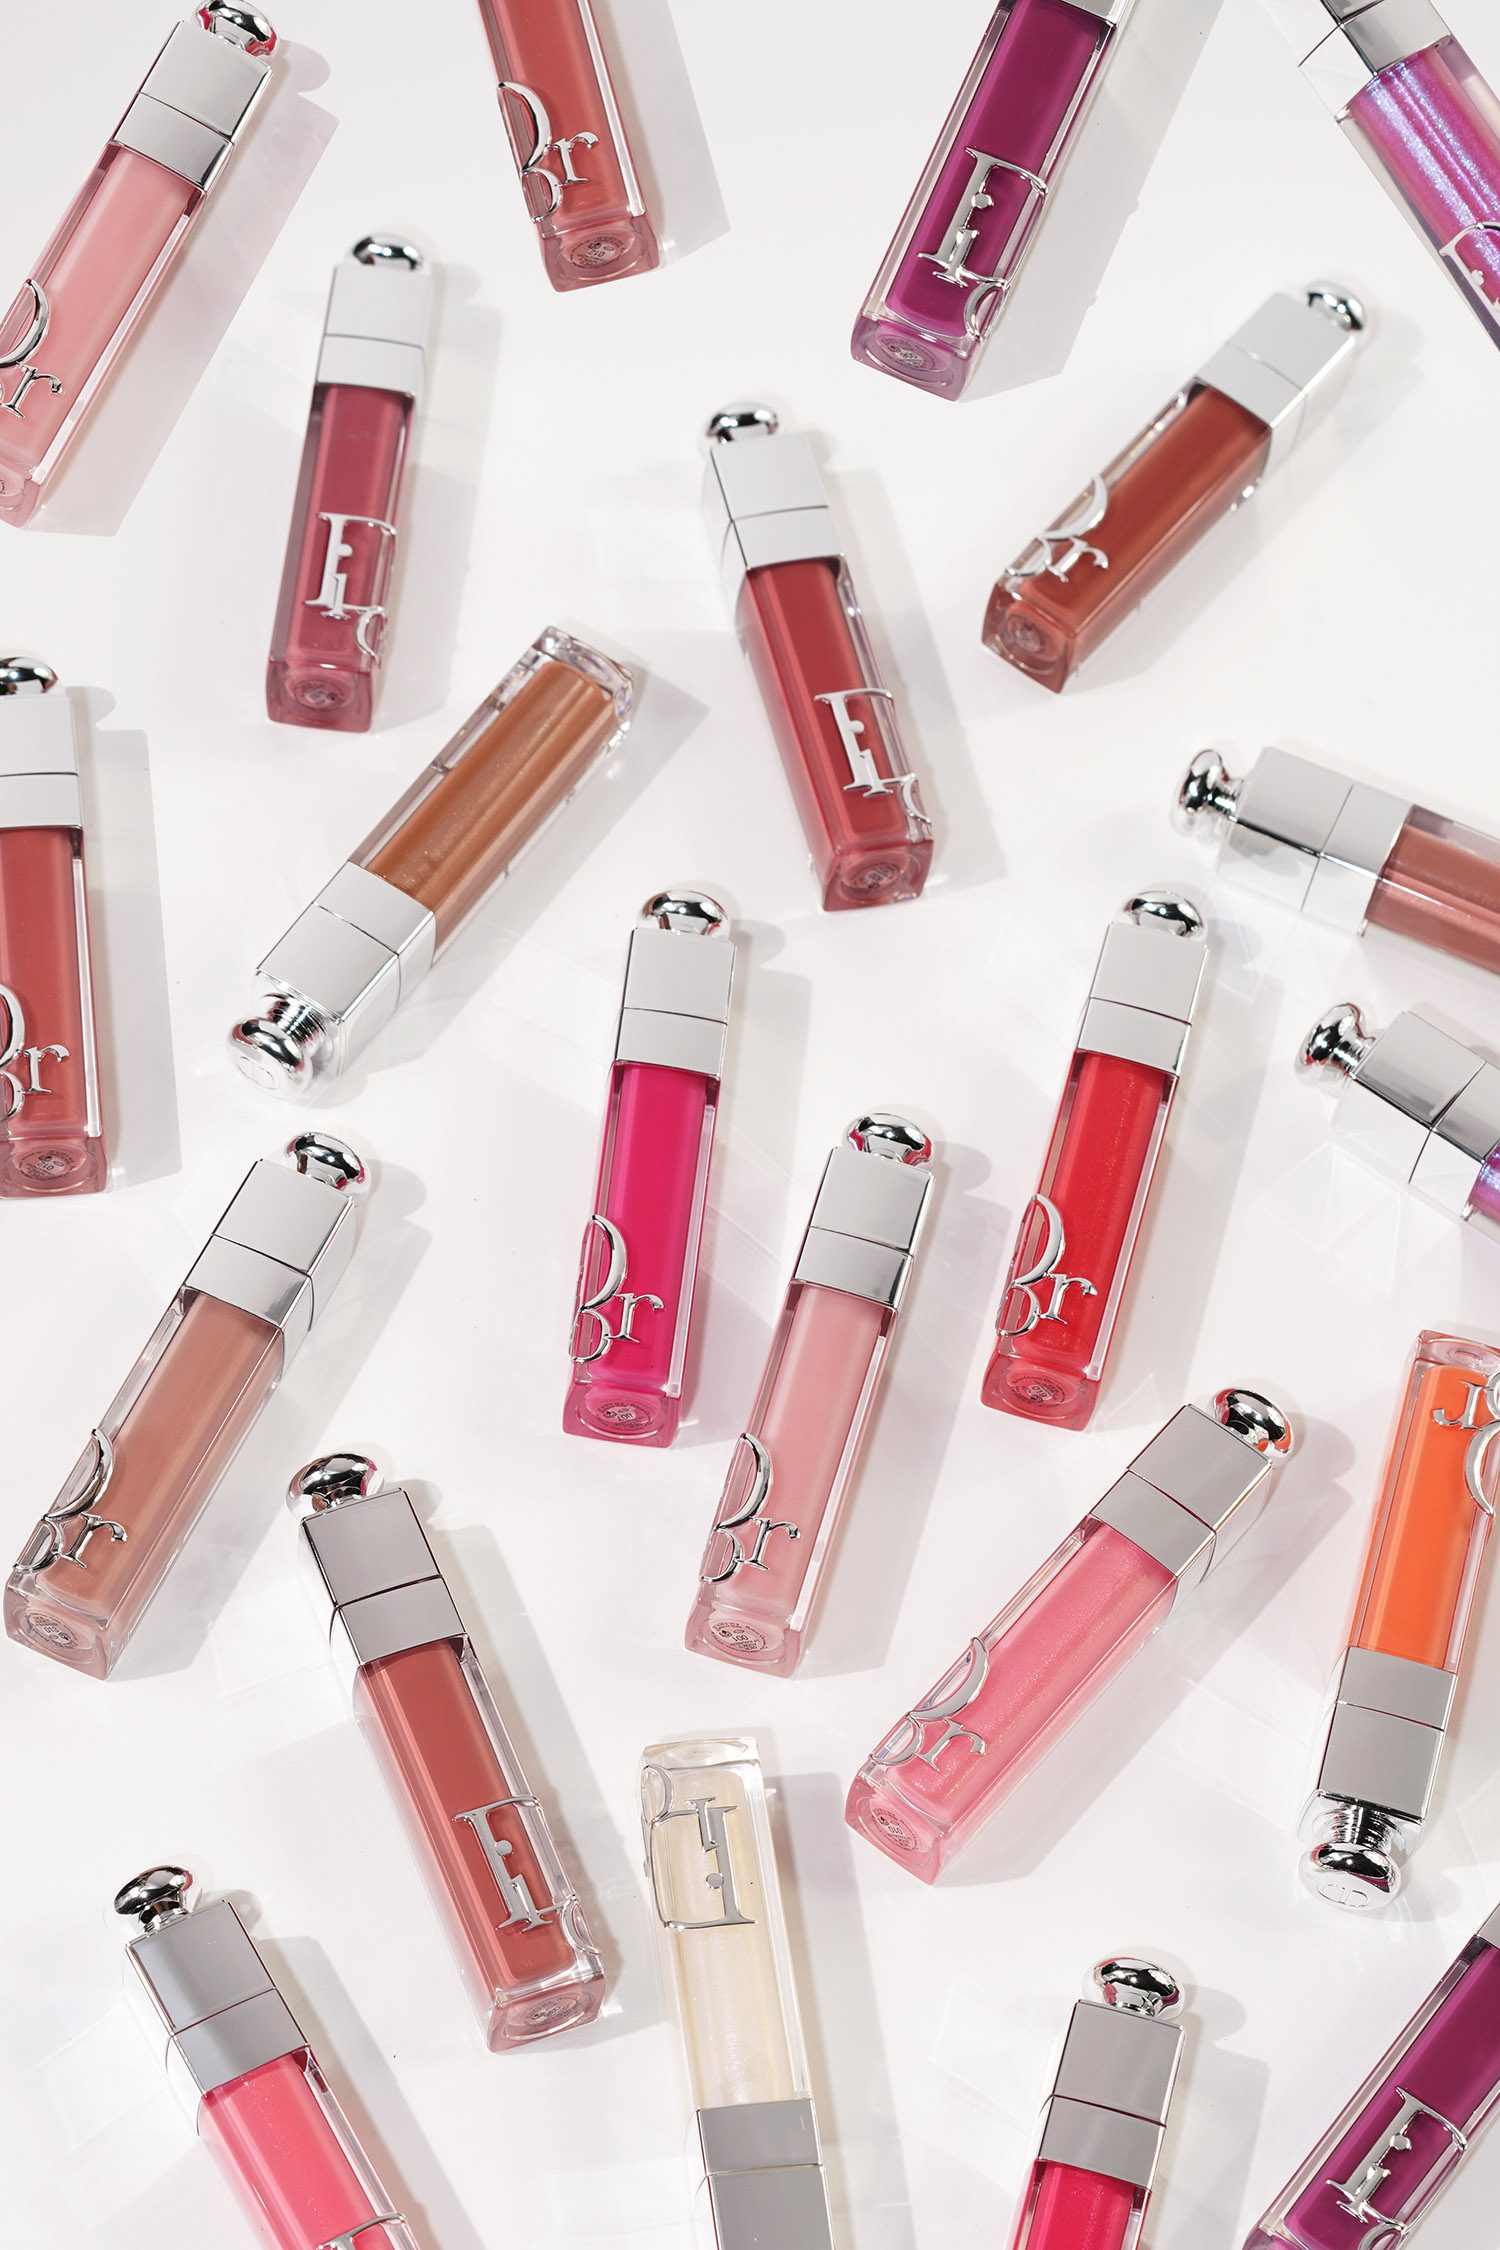 Dior Addict Lip The Book – - Maximizers Beauty Look Formula New + Colors